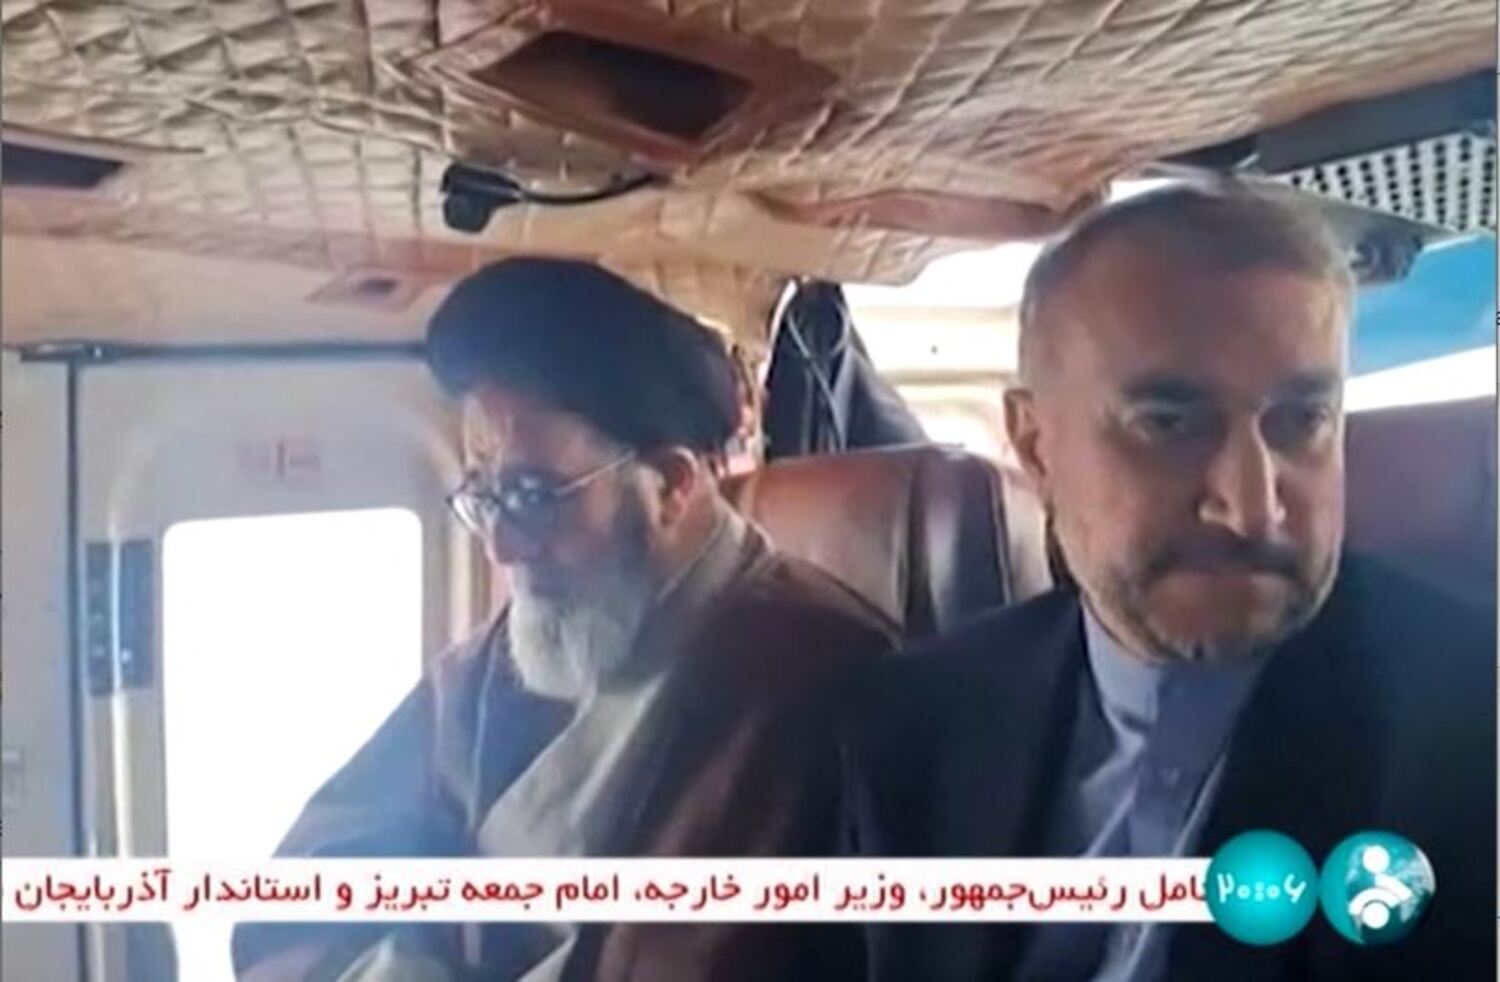  Captura de imagem de vídeo divulgado pela rede de televisão estatal iraniana IRINN mostra o ministro das Relações Exteriores da República Islâmica, Hossein Amir-Abdollahian (direita), a bordo de helicóptero na região de Jolfa, na província ocidental do Azerbaijão Oriental do Irã